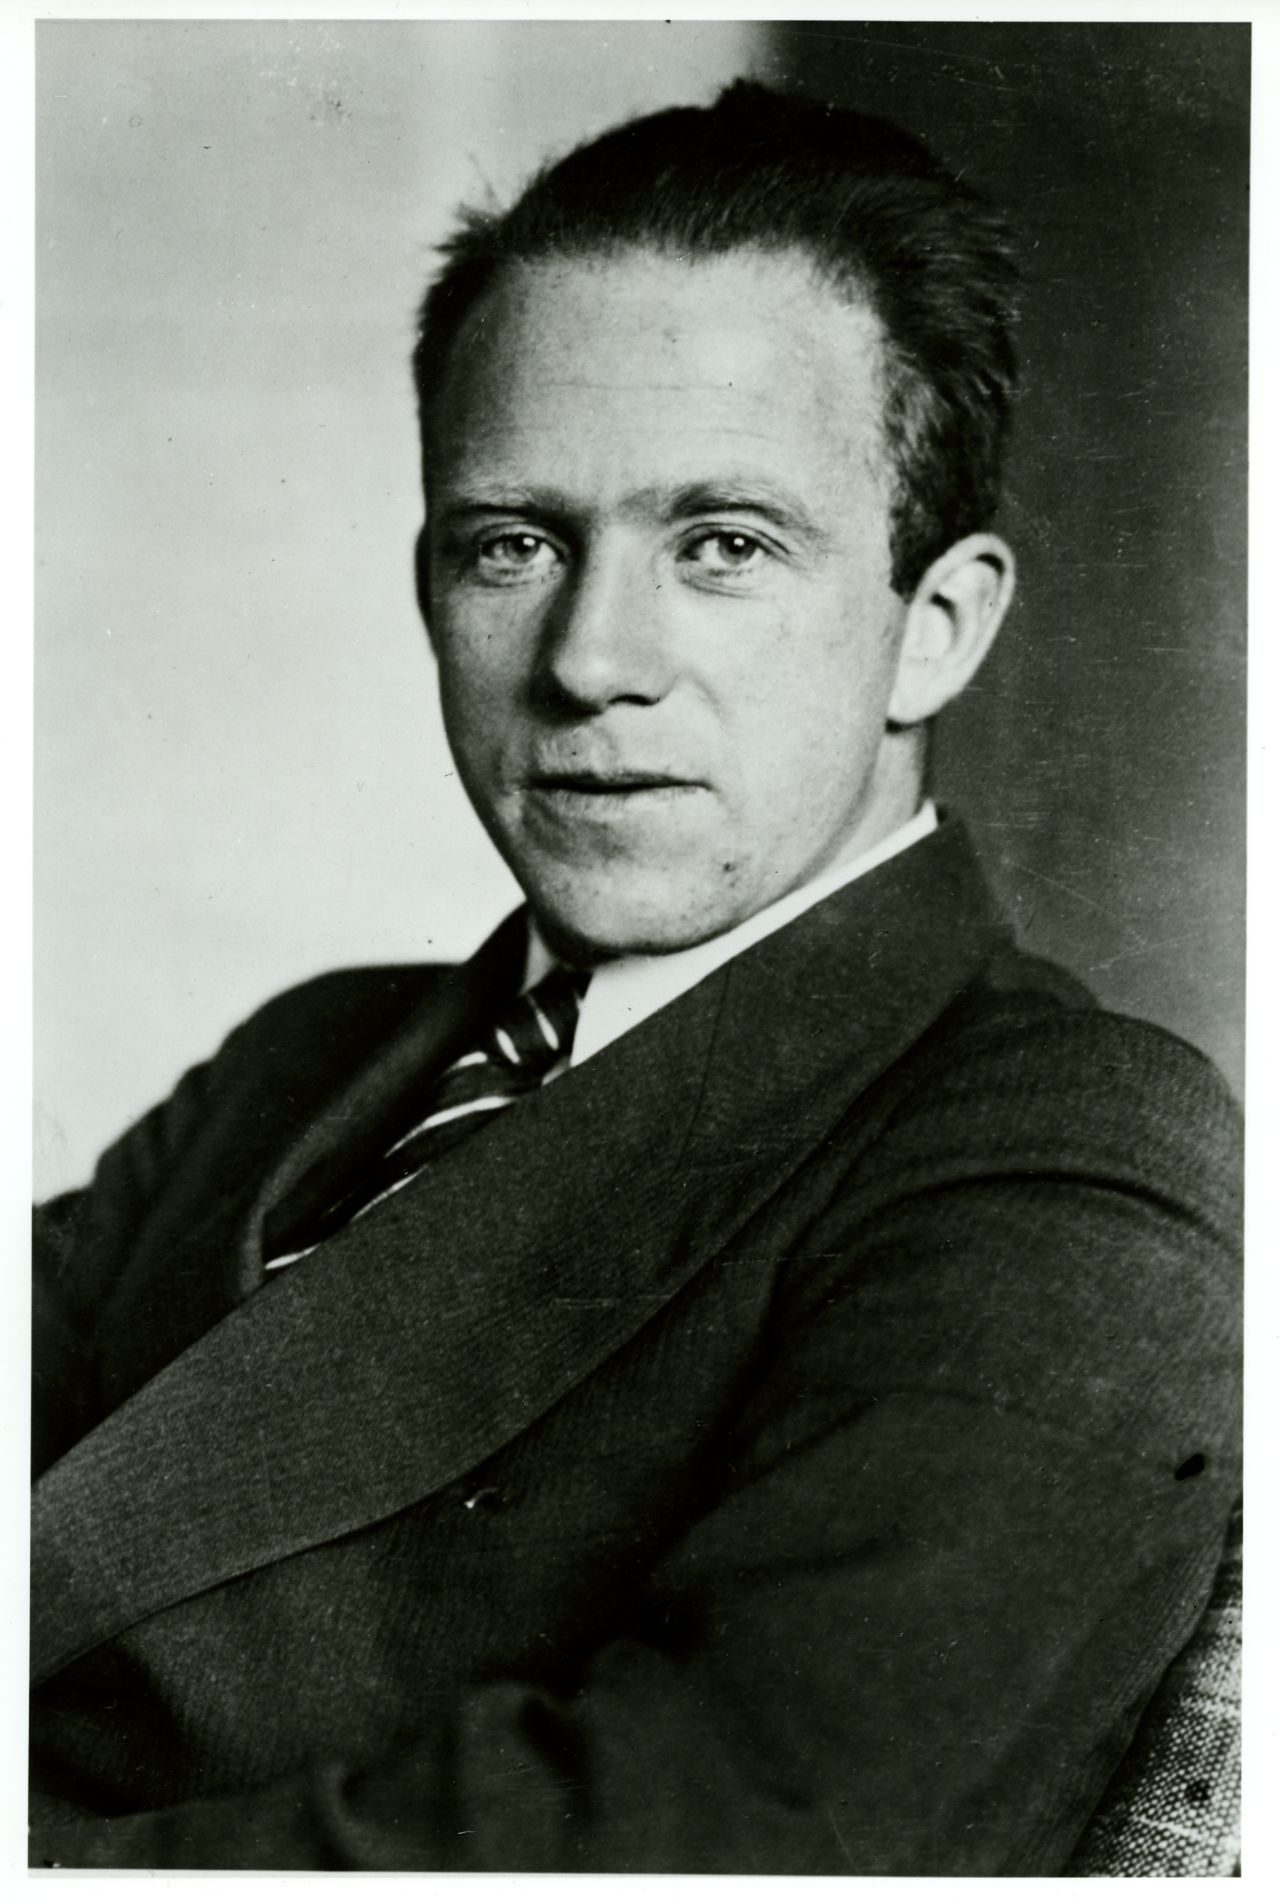 Foto des Physikers und Nobelpreisträgers Werner Heisenberg, um 1933.